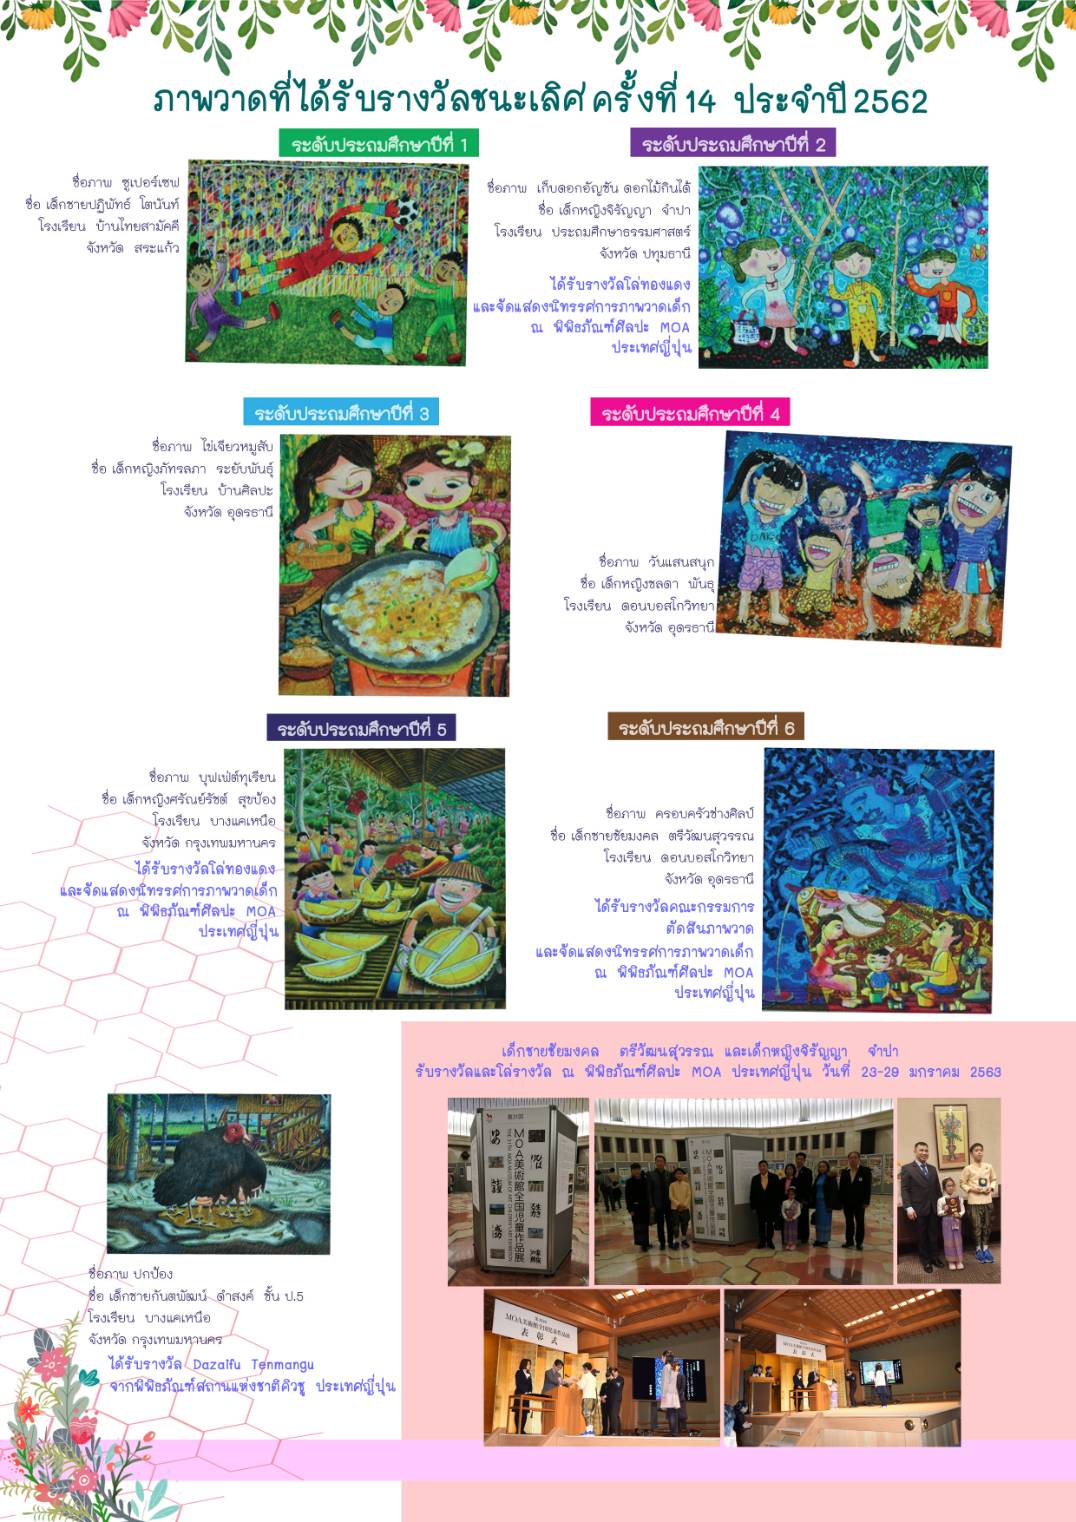 โครงการประกวดภาพวาดส่งเสริมวัฒนธรรมความสัมพันธ์ไทย-ญี่ปุ่น ครั้งที่ 15 ประจำปี 2563